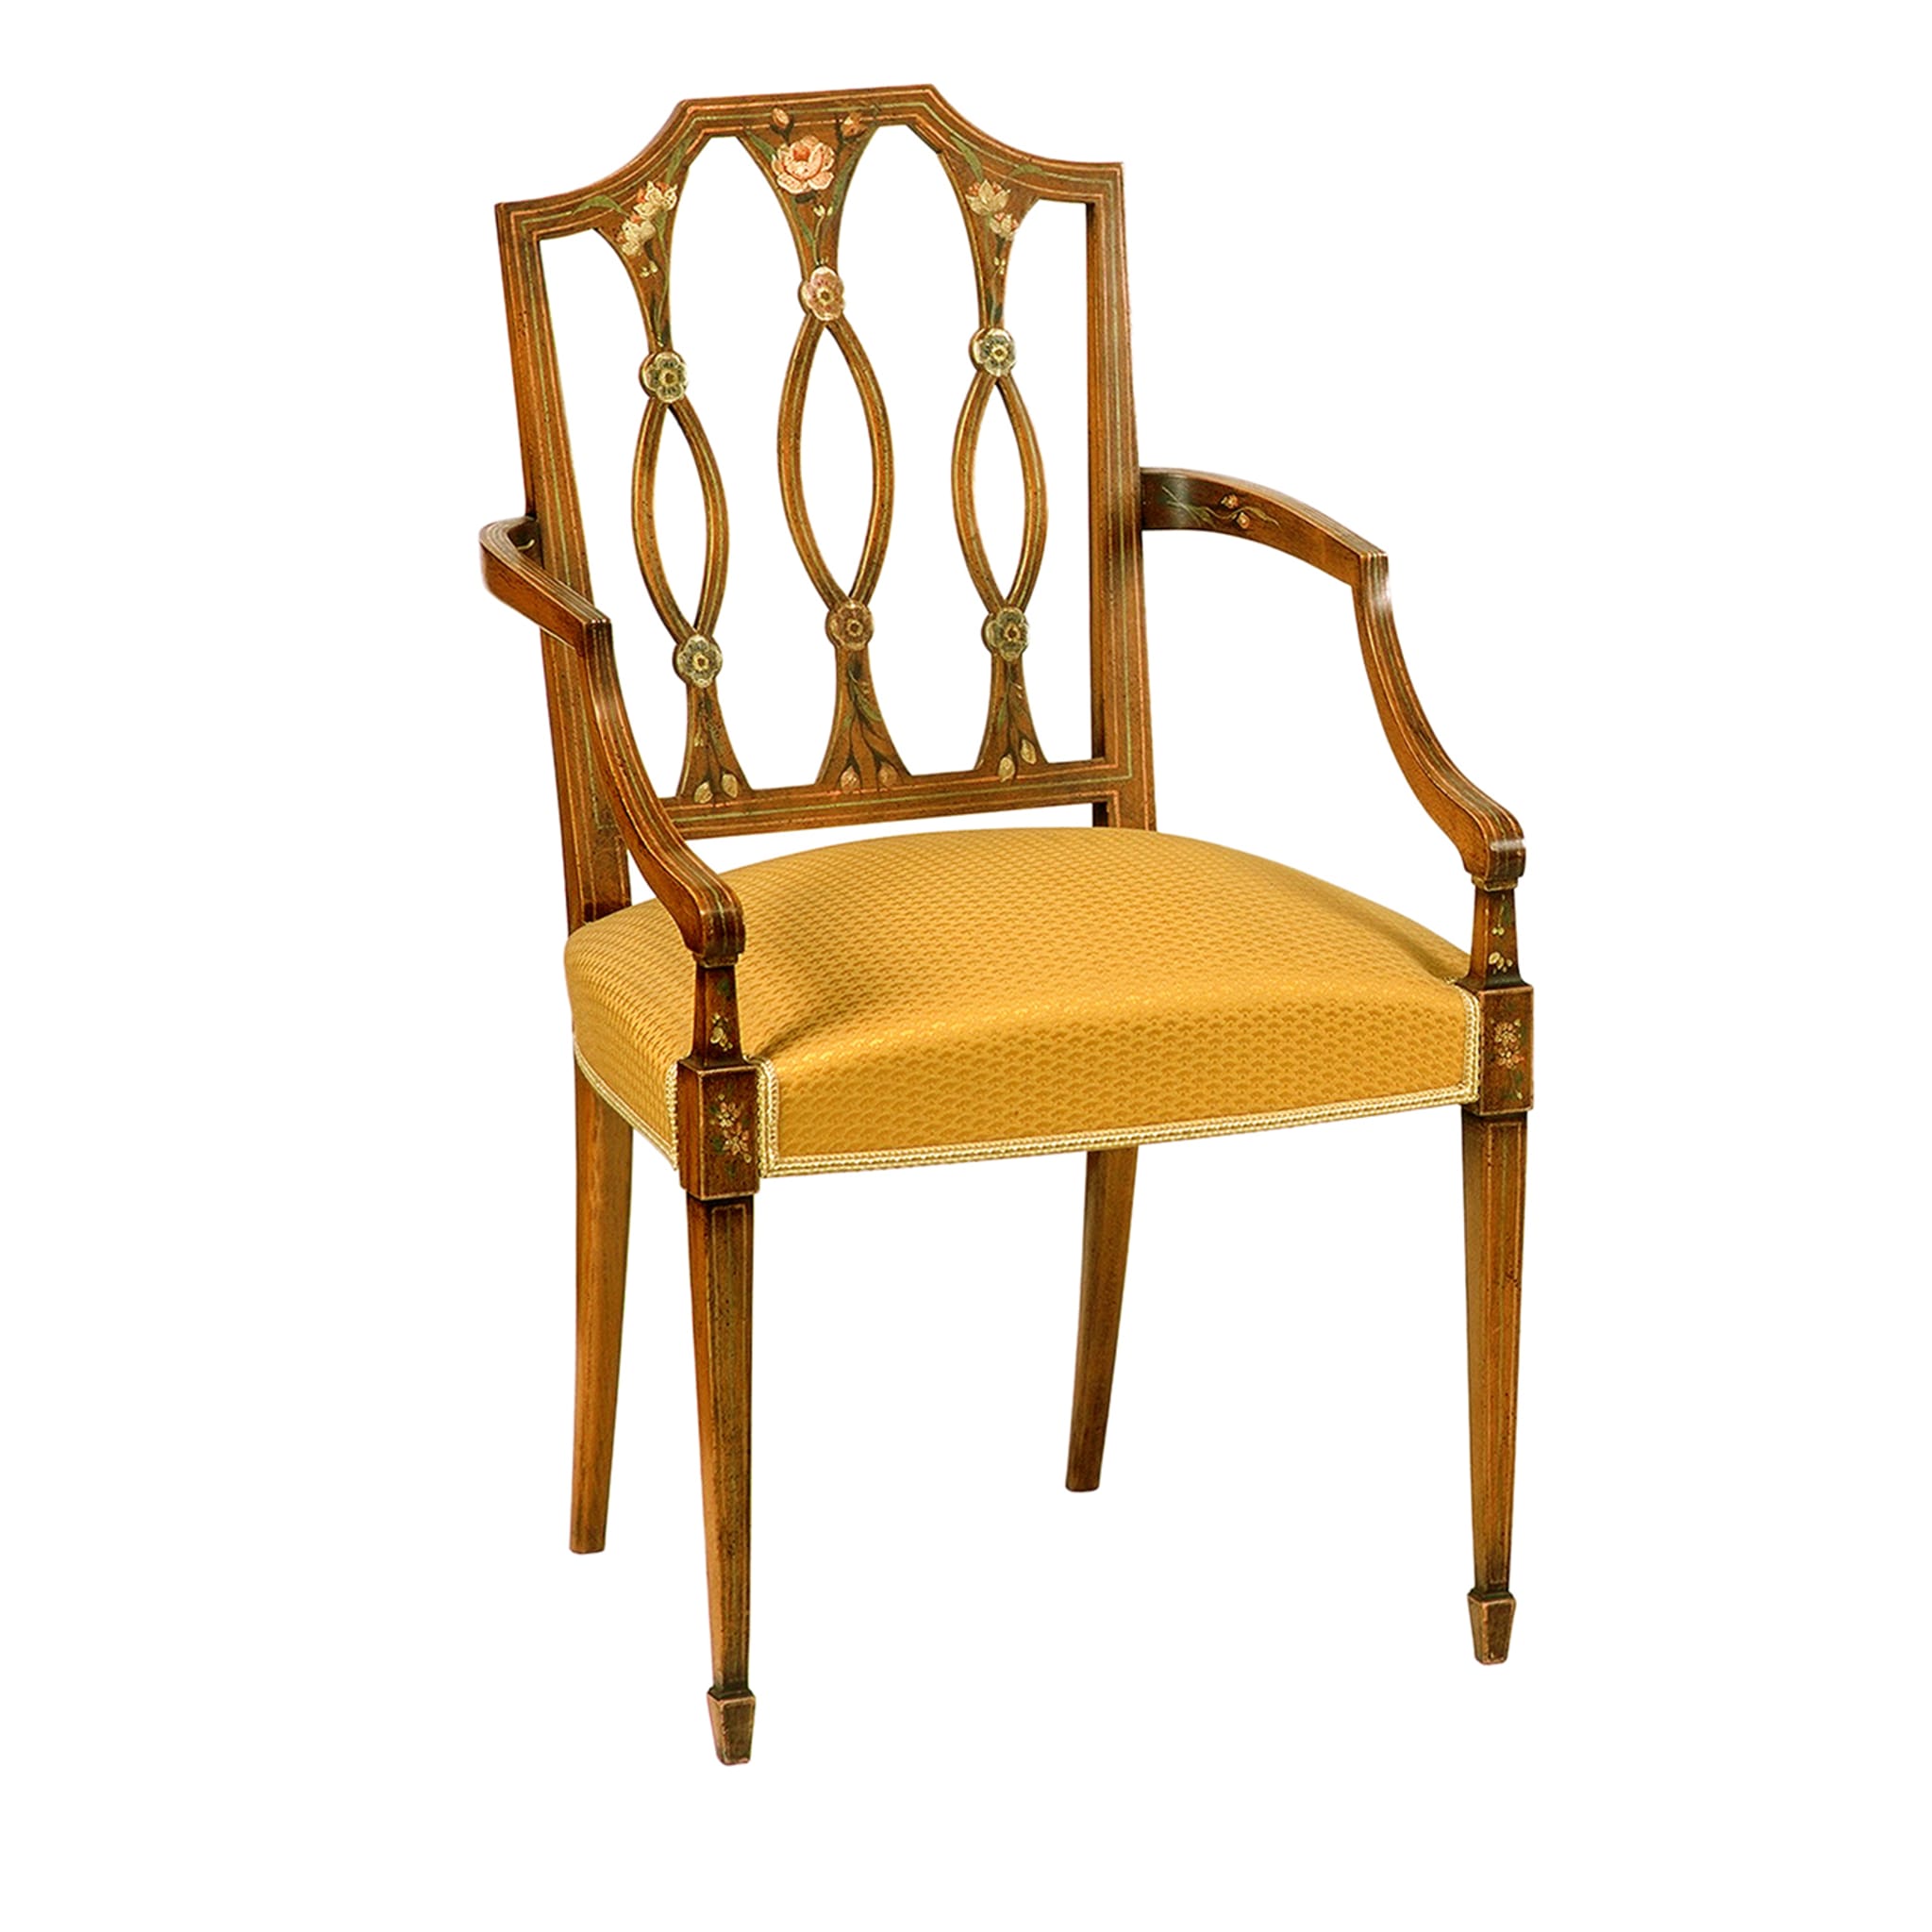 Hepplewhite Hand-Painted Ocher-Cushion Chair - Main view